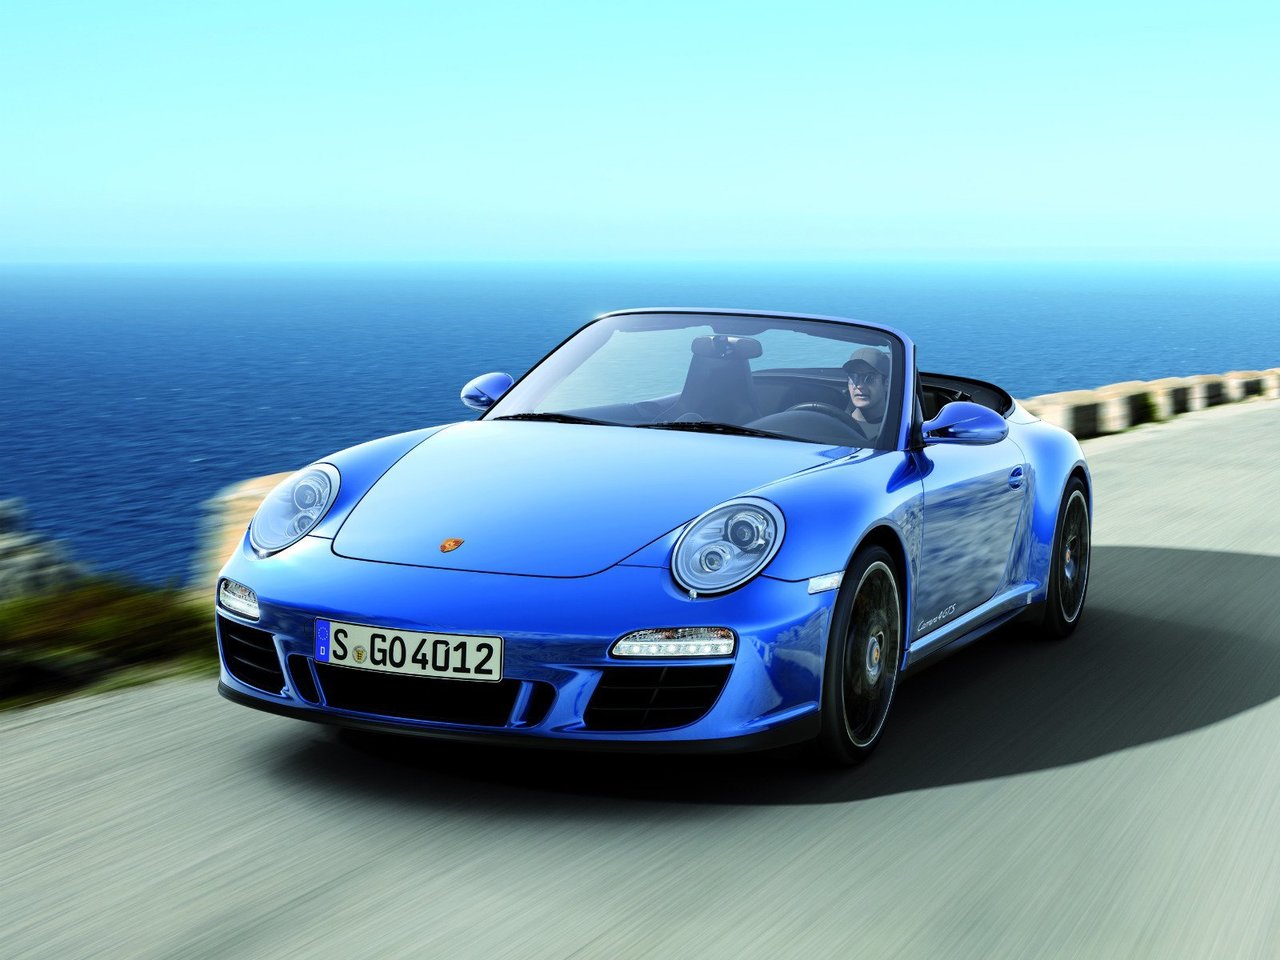 Расход газа трёх комплектаций кабриолета Porsche 911. Разница стоимости заправки газом и бензином. Автономный пробег до и после установки ГБО.